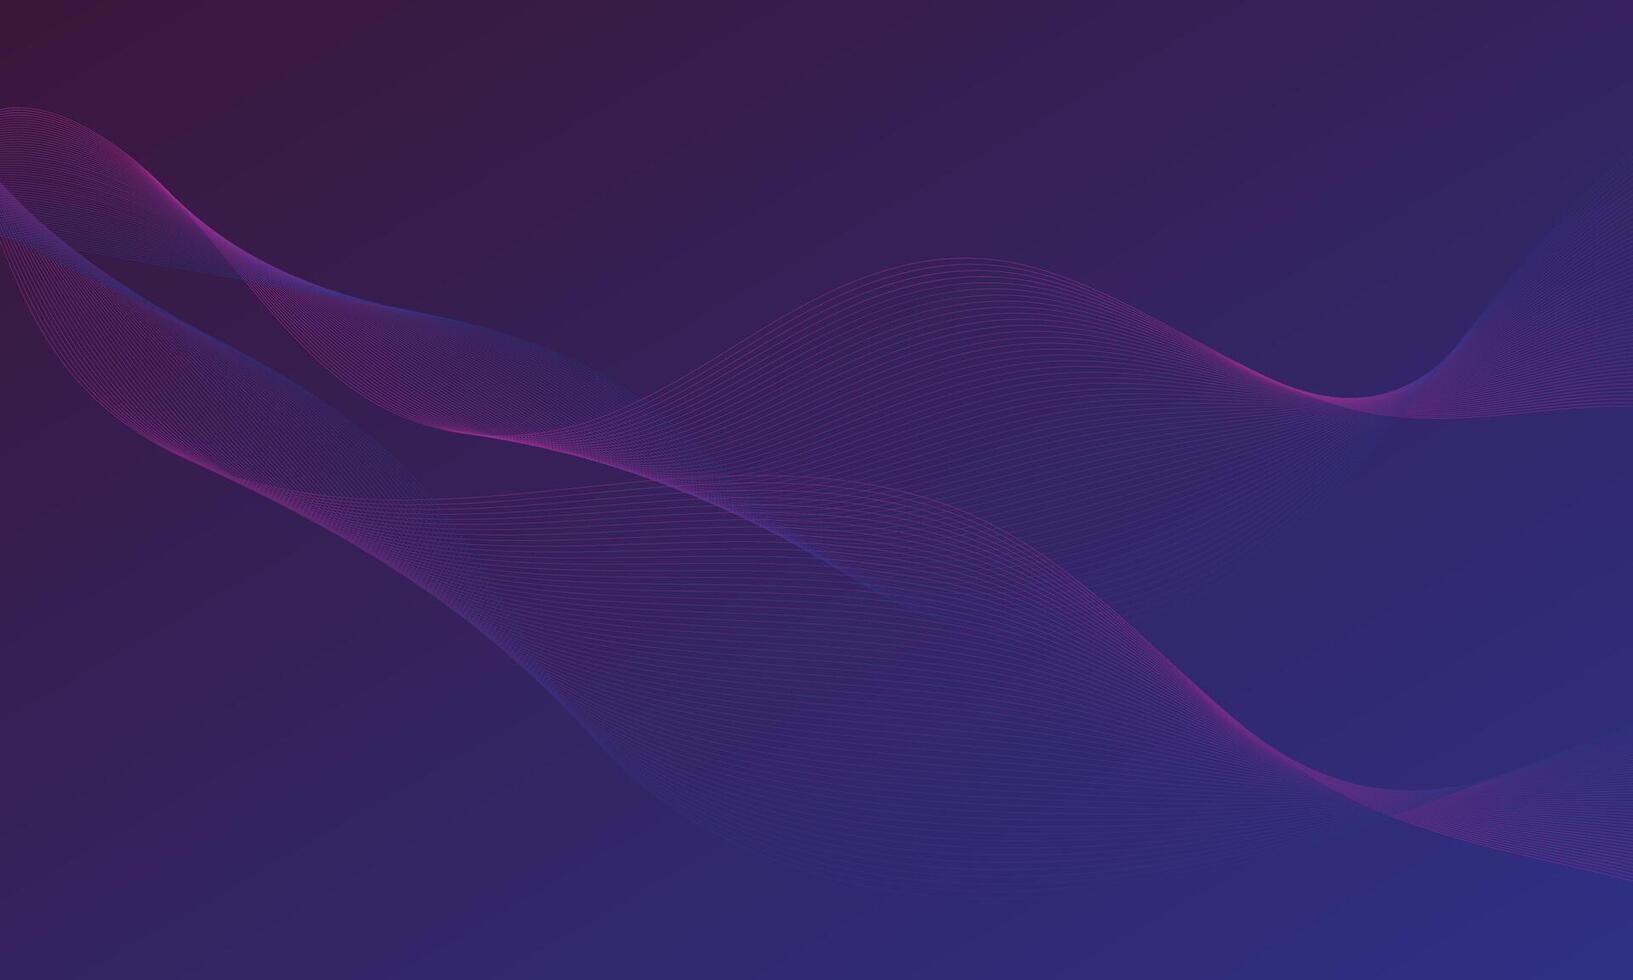 strömmar av lysande rader form en Vinka mönster av violett ljus på isolerat mörk blåviolett bakgrund. vektor illustration i trogen stil, vetenskap, musik, bakgrund.